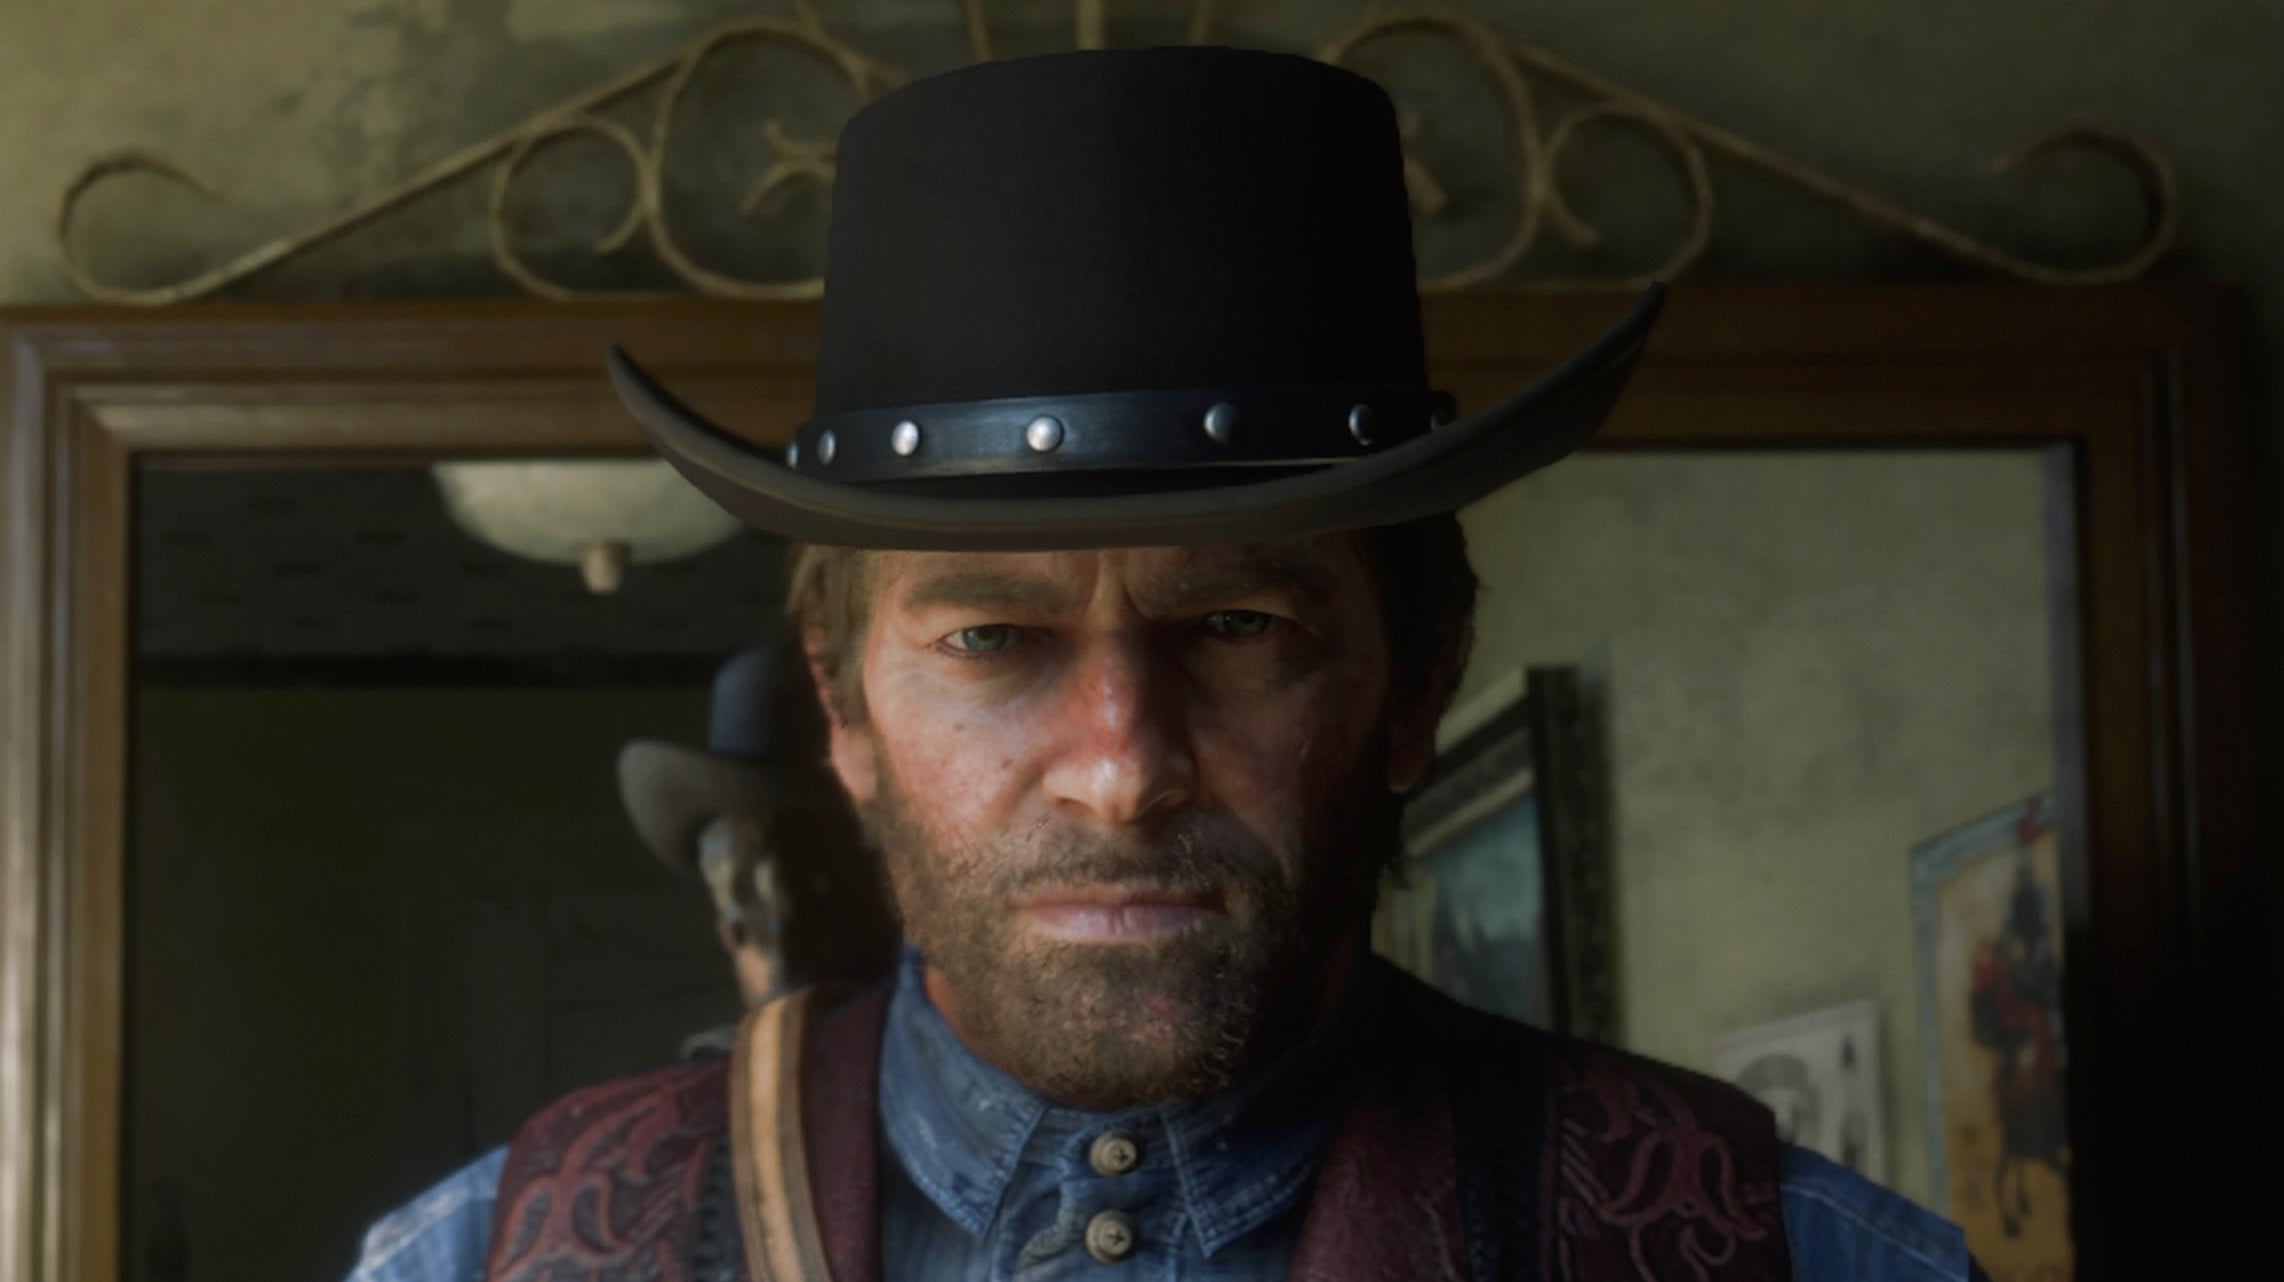 Bilder zu Red Dead Redemption 2: Hut verloren? So findet ihr ihn wieder